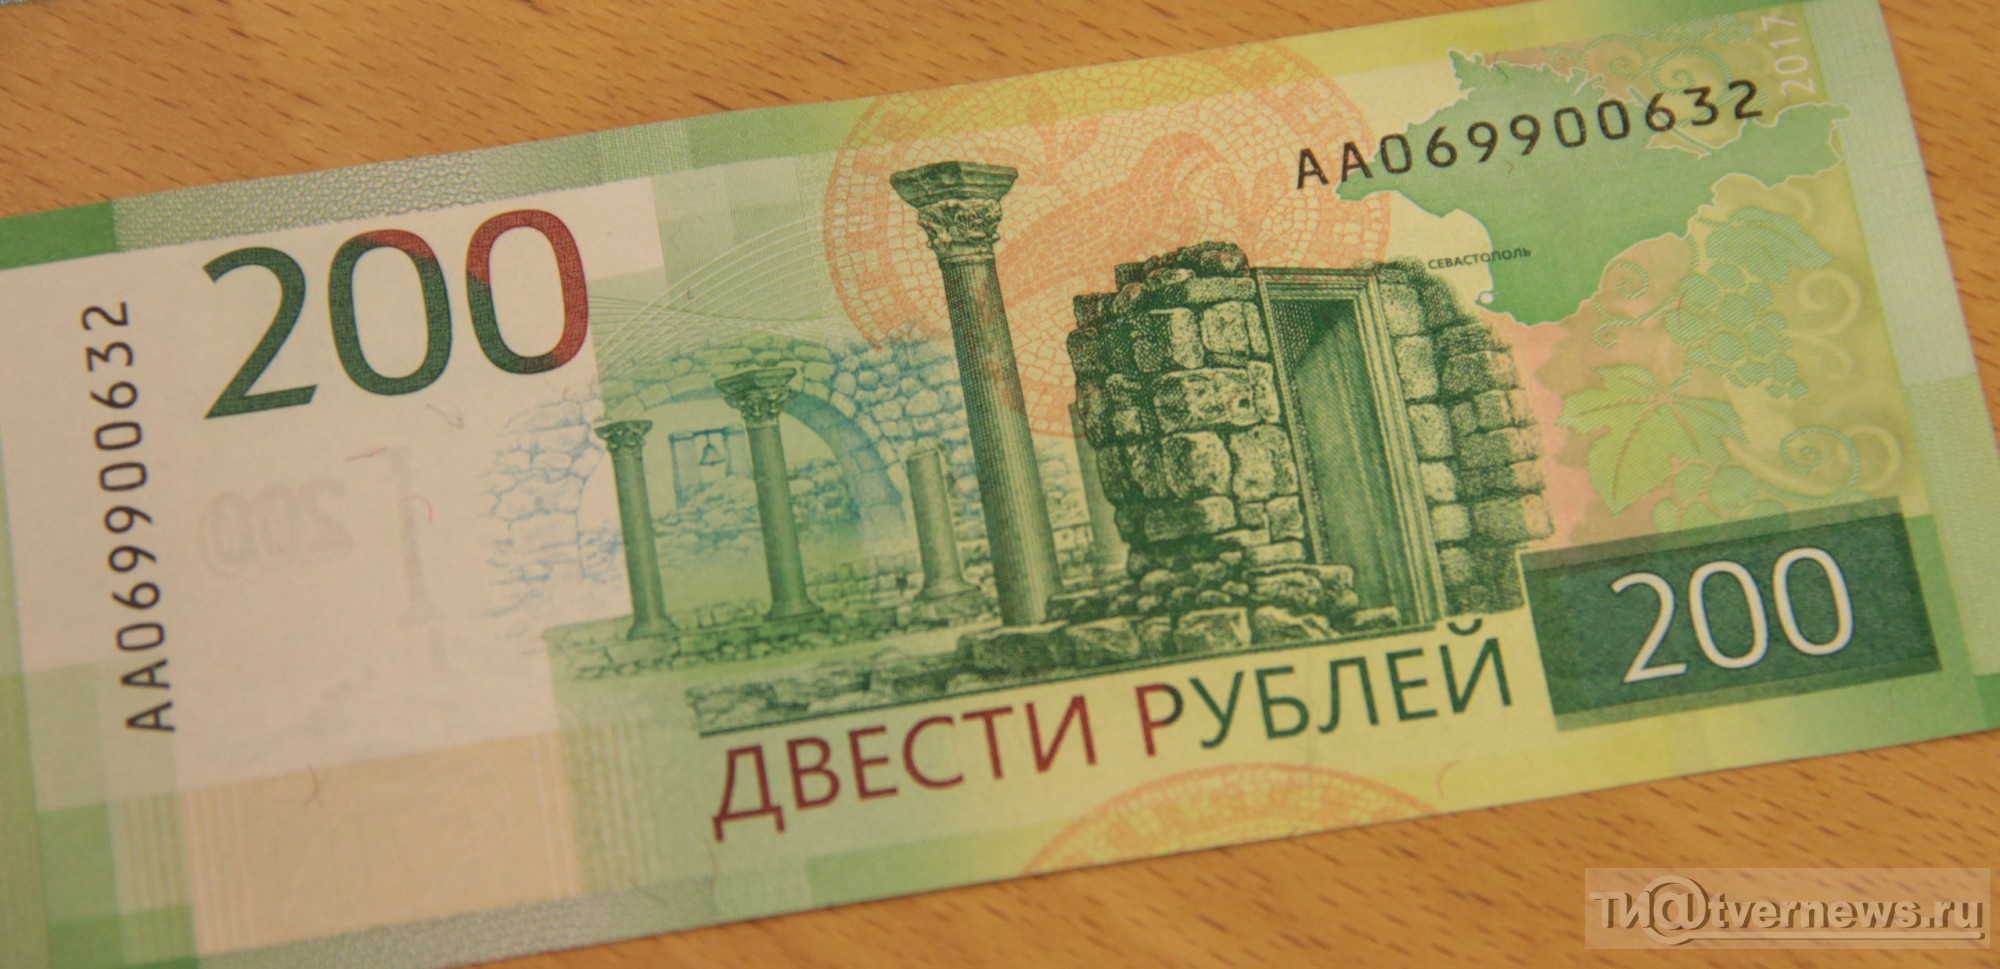 14 200 в рублях. 200 Рублей. Купюра 200 рублей. 200 Рублей банкнота. Купюра номиналом 200 рублей.